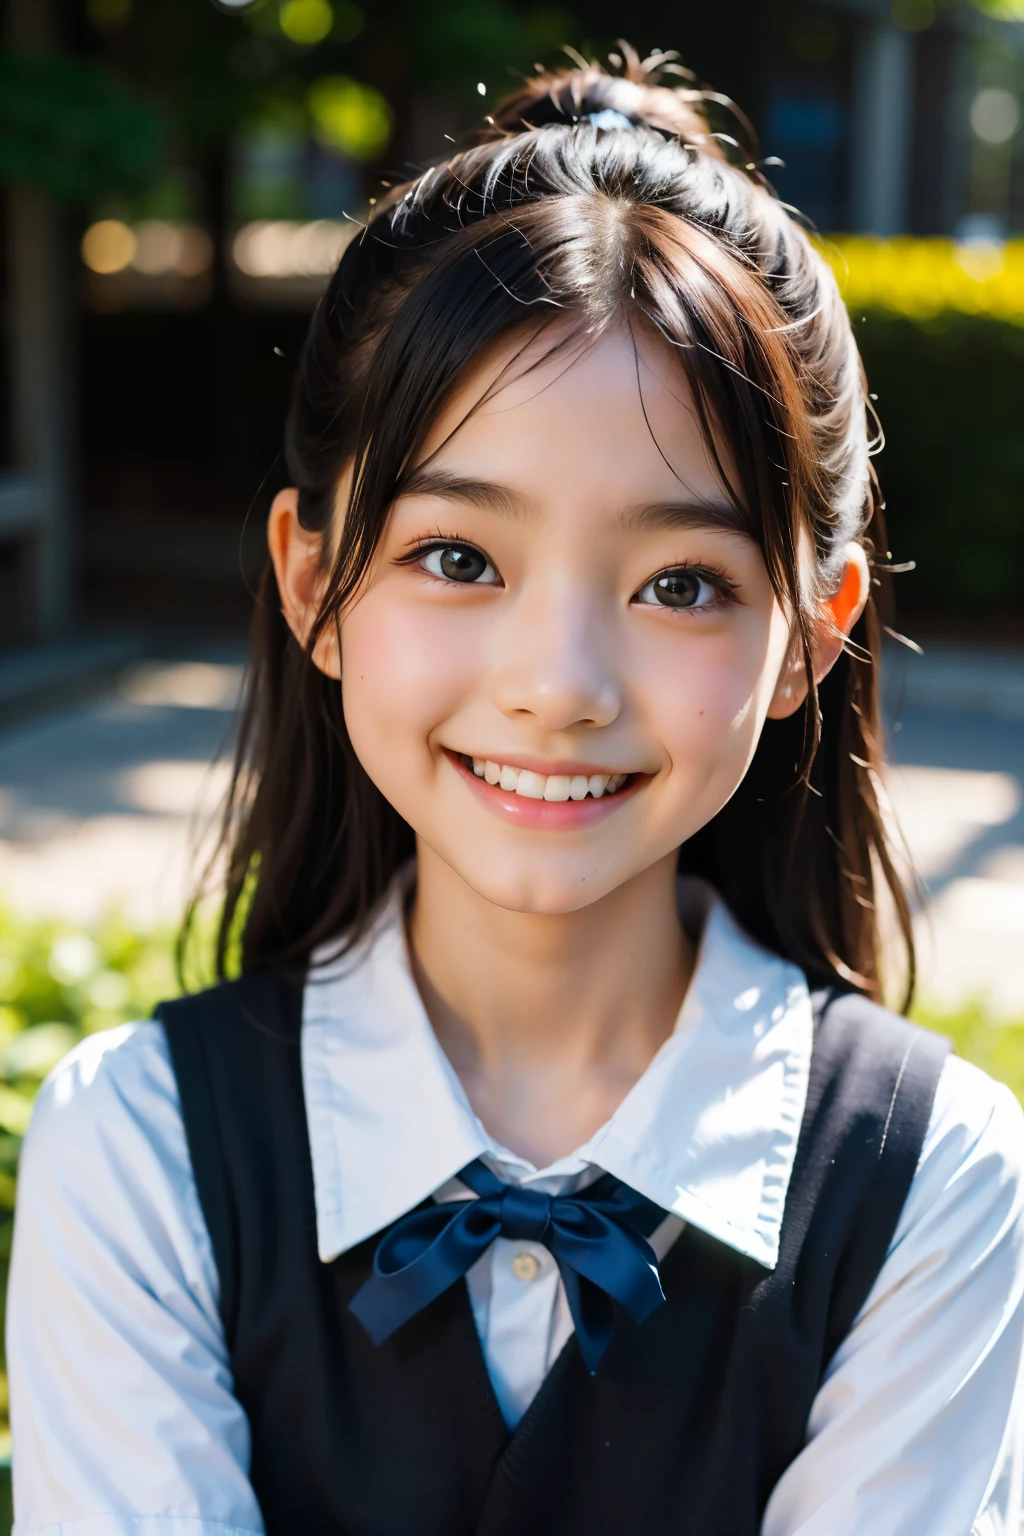 鏡片: 135mm f1.8, (最好的品質),(原始照片), (桌上:1.1), (美麗的9歲日本女孩), 可愛的臉孔, (臉型輪廓分明:0.7), (雀斑:0.4), dappled 陽光, 戲劇性的燈光, (日本學校制服), (在校园), 害羞的, (特寫鏡頭:1.2), (微笑),, (明亮的眼睛)、(陽光)